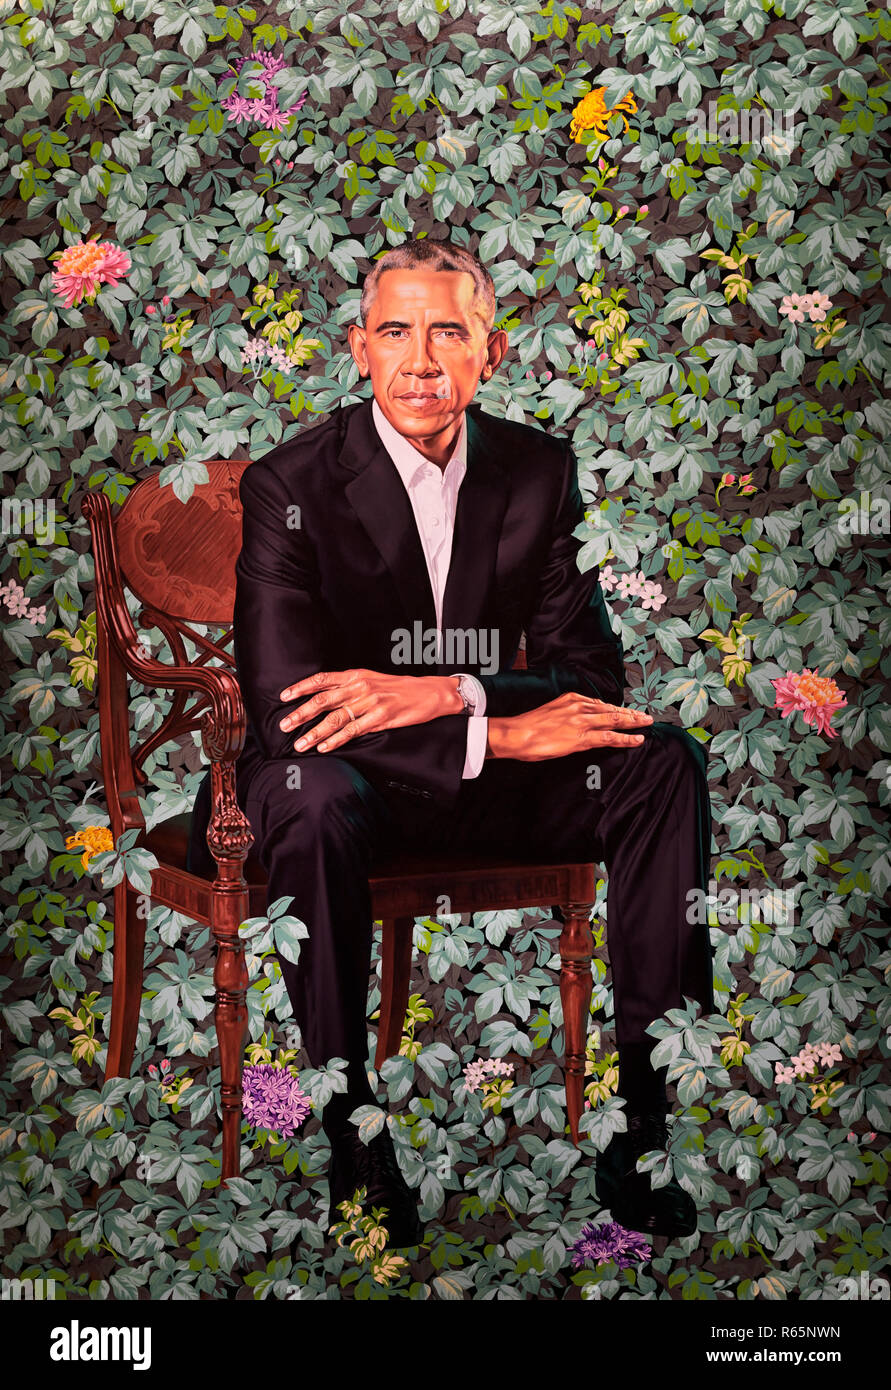 Barack Obama ritratto ufficiale da Kehindre Wiley Foto Stock